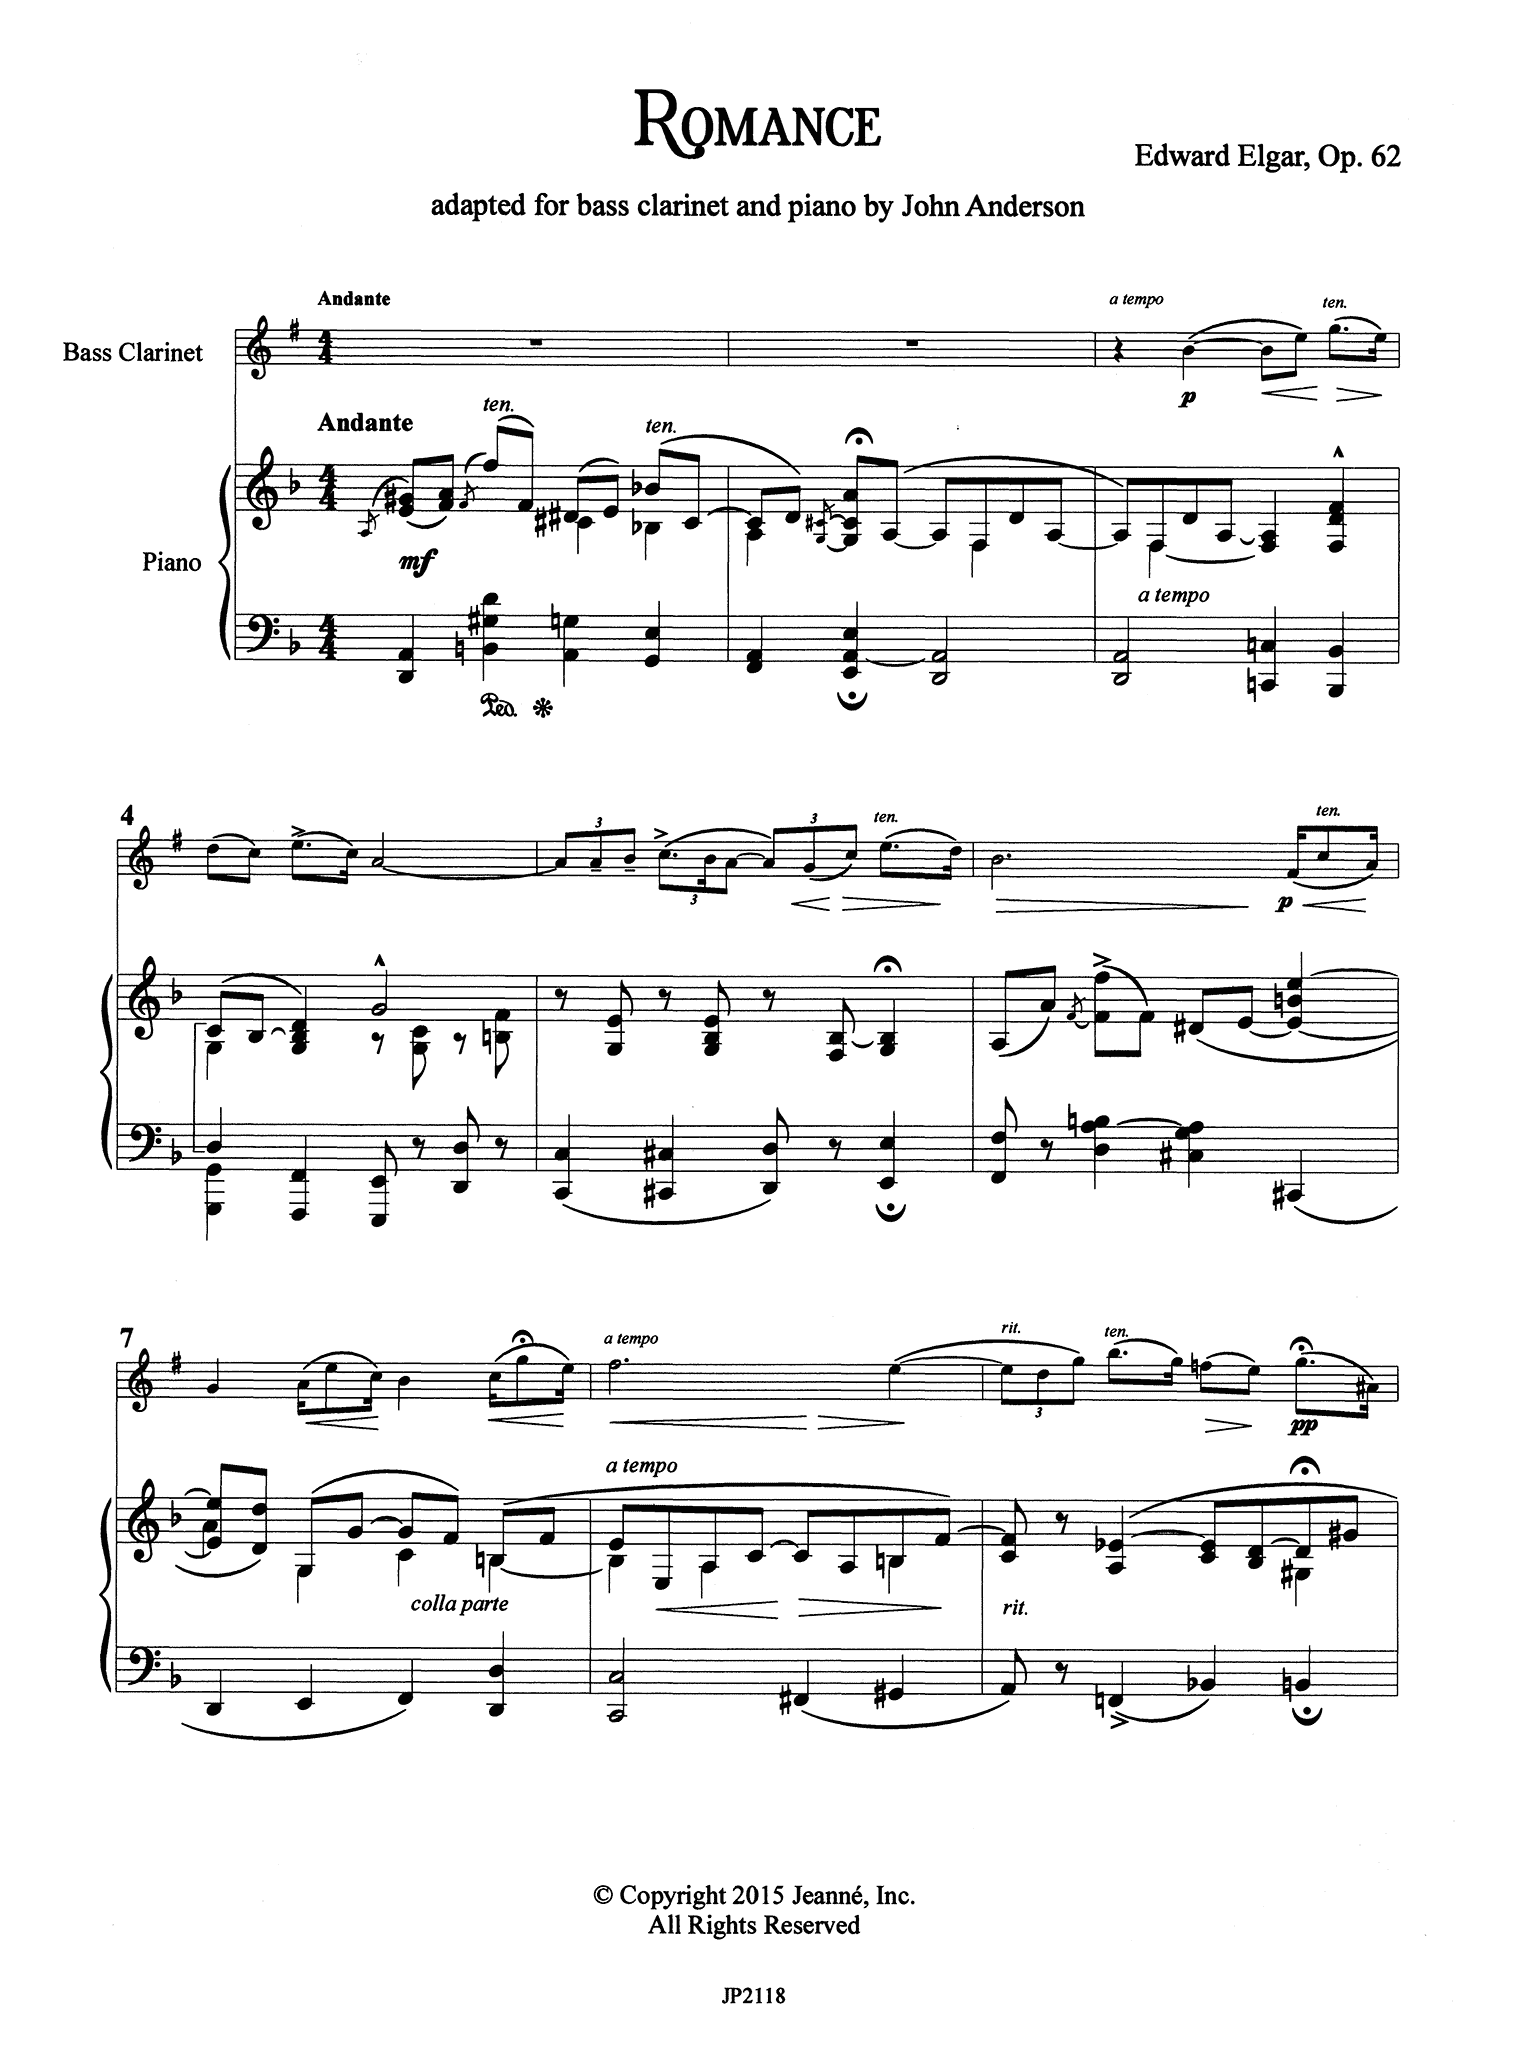 Elgar Romance, Op. 62 bass clarinet arrangement score